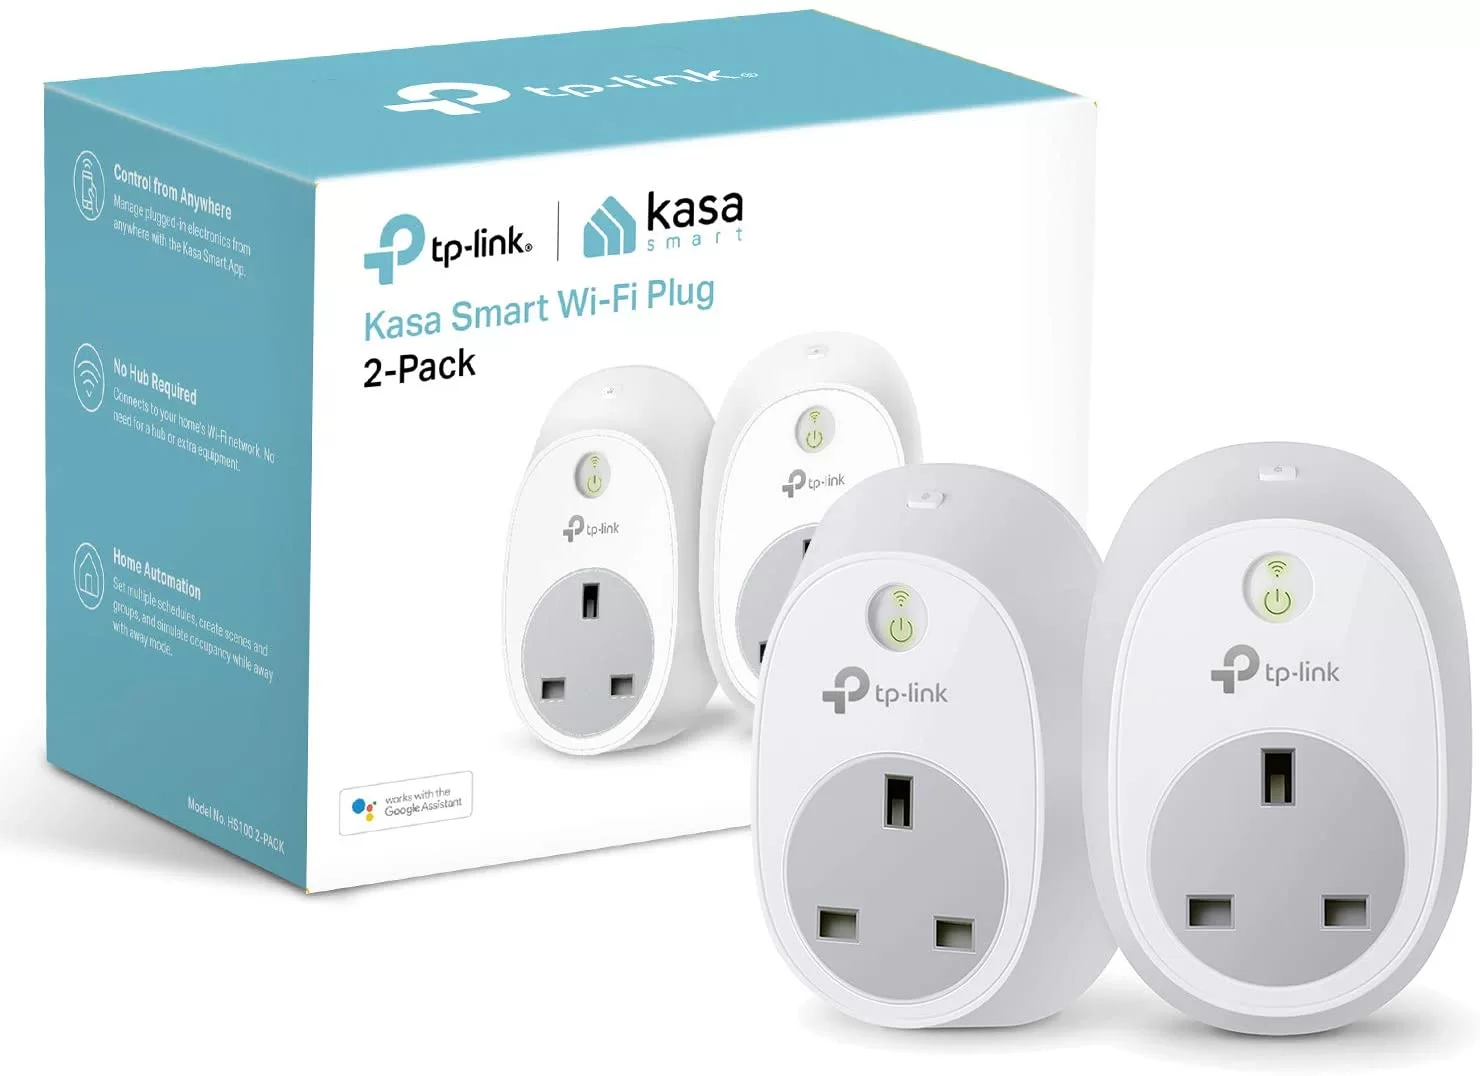 How to Reset a Kasa Smart Plug